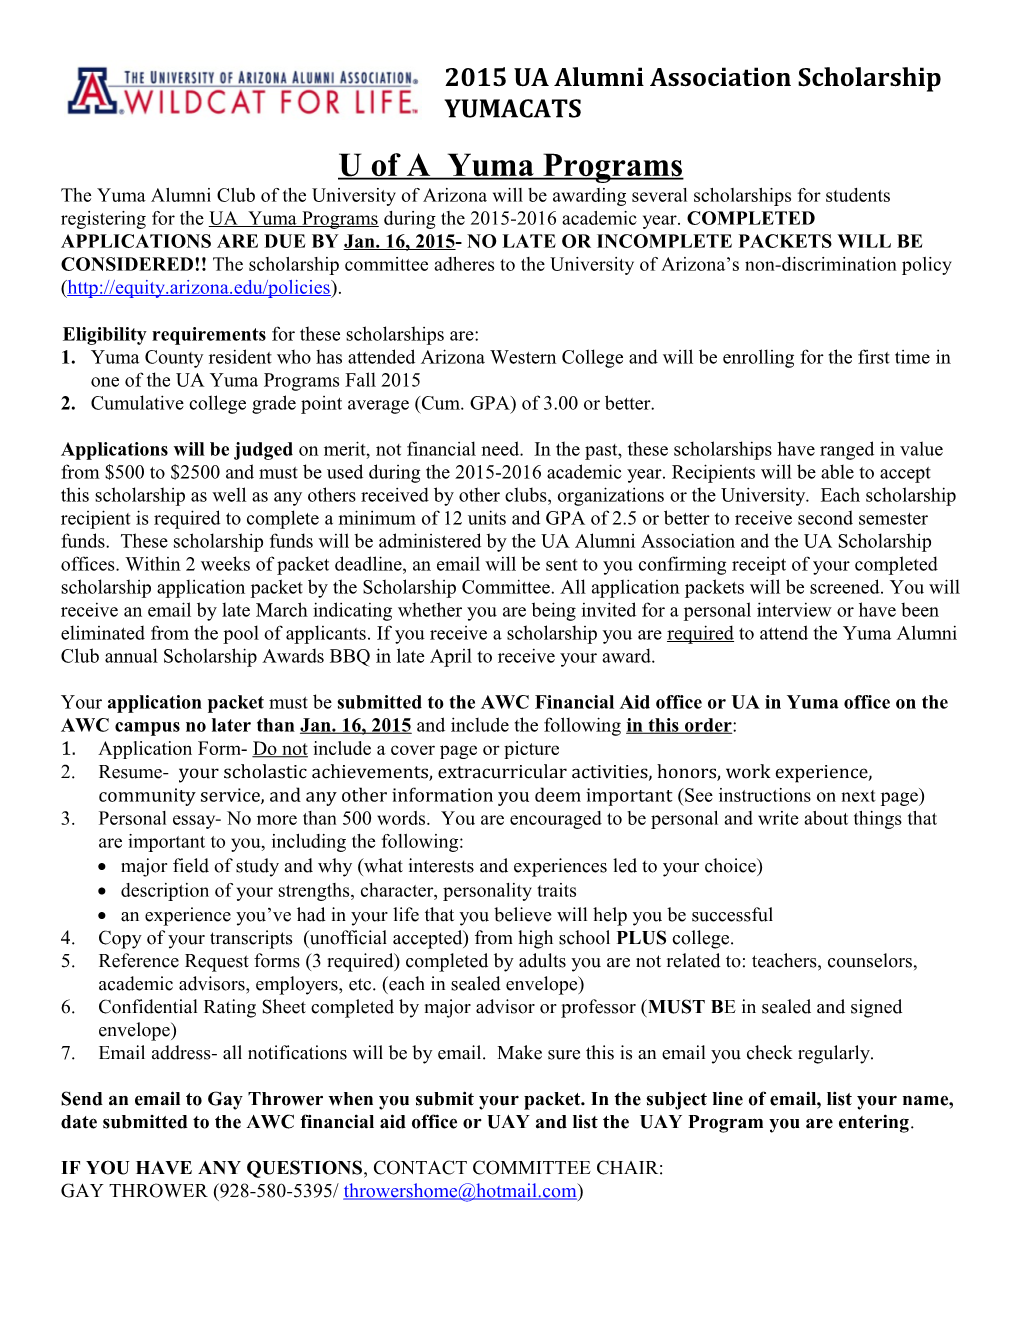 U of a Yuma Programs